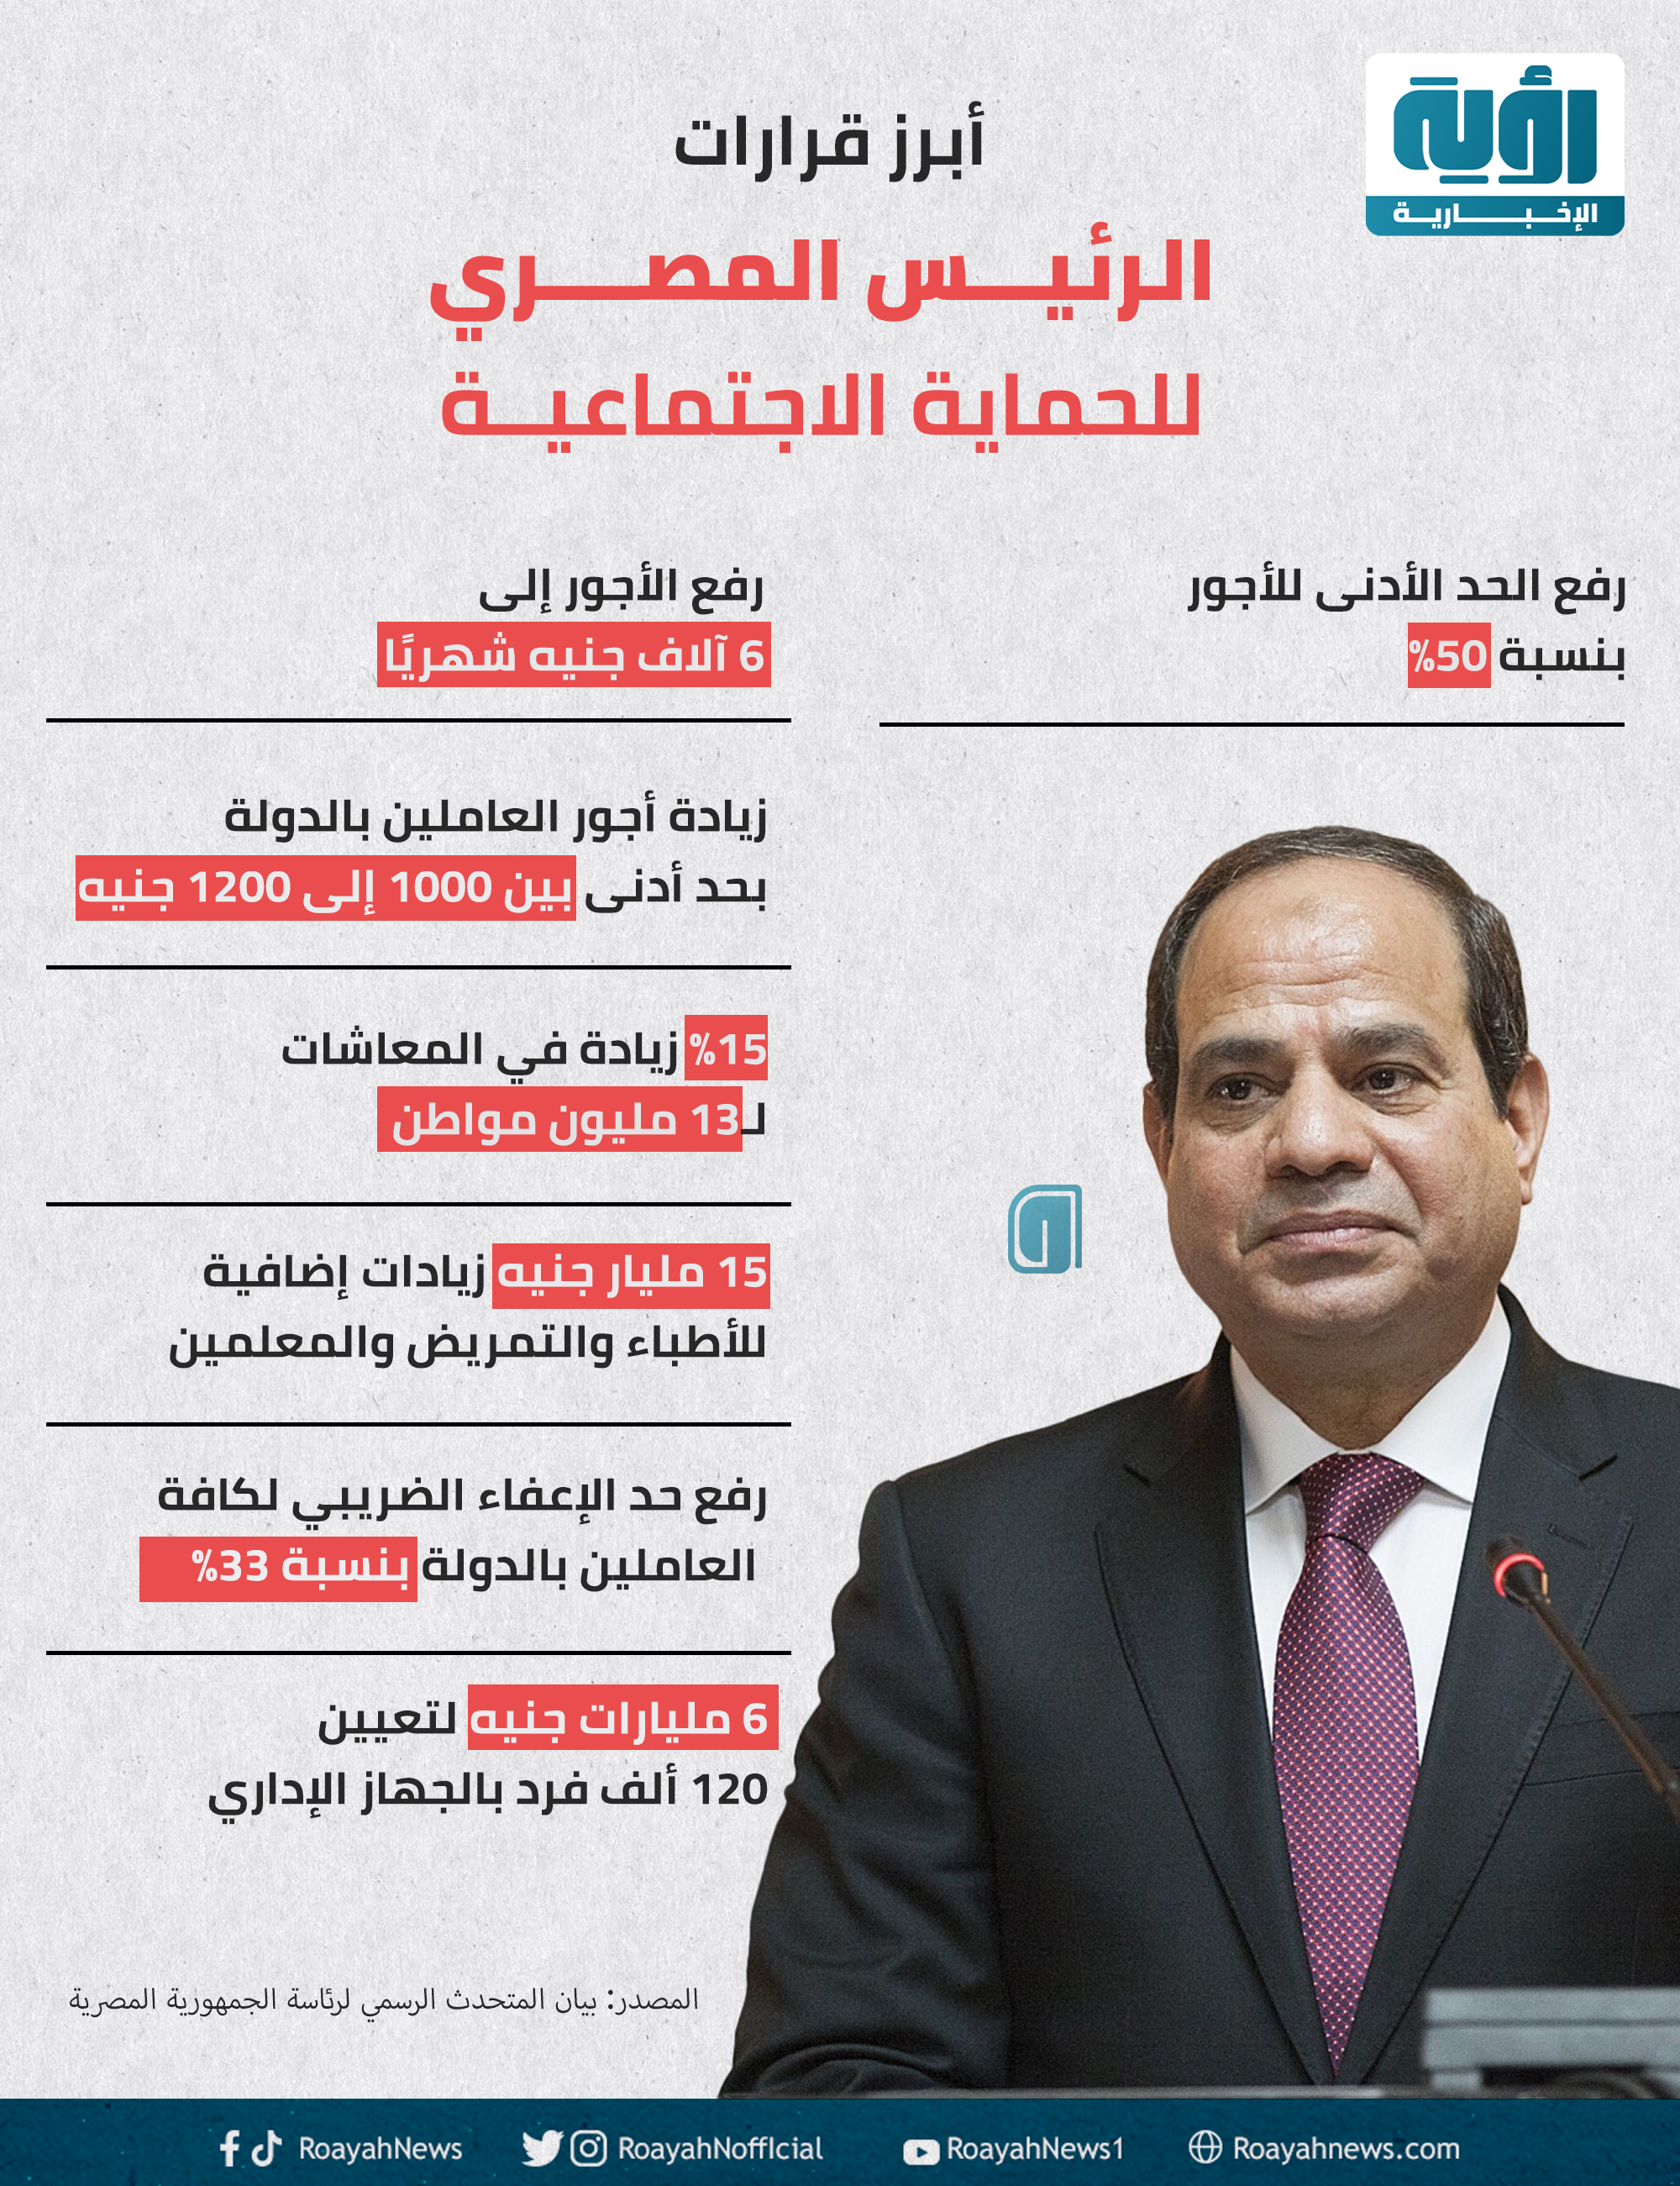 أبرز قرارات الرئيس المصري للحماية الاجتماعية